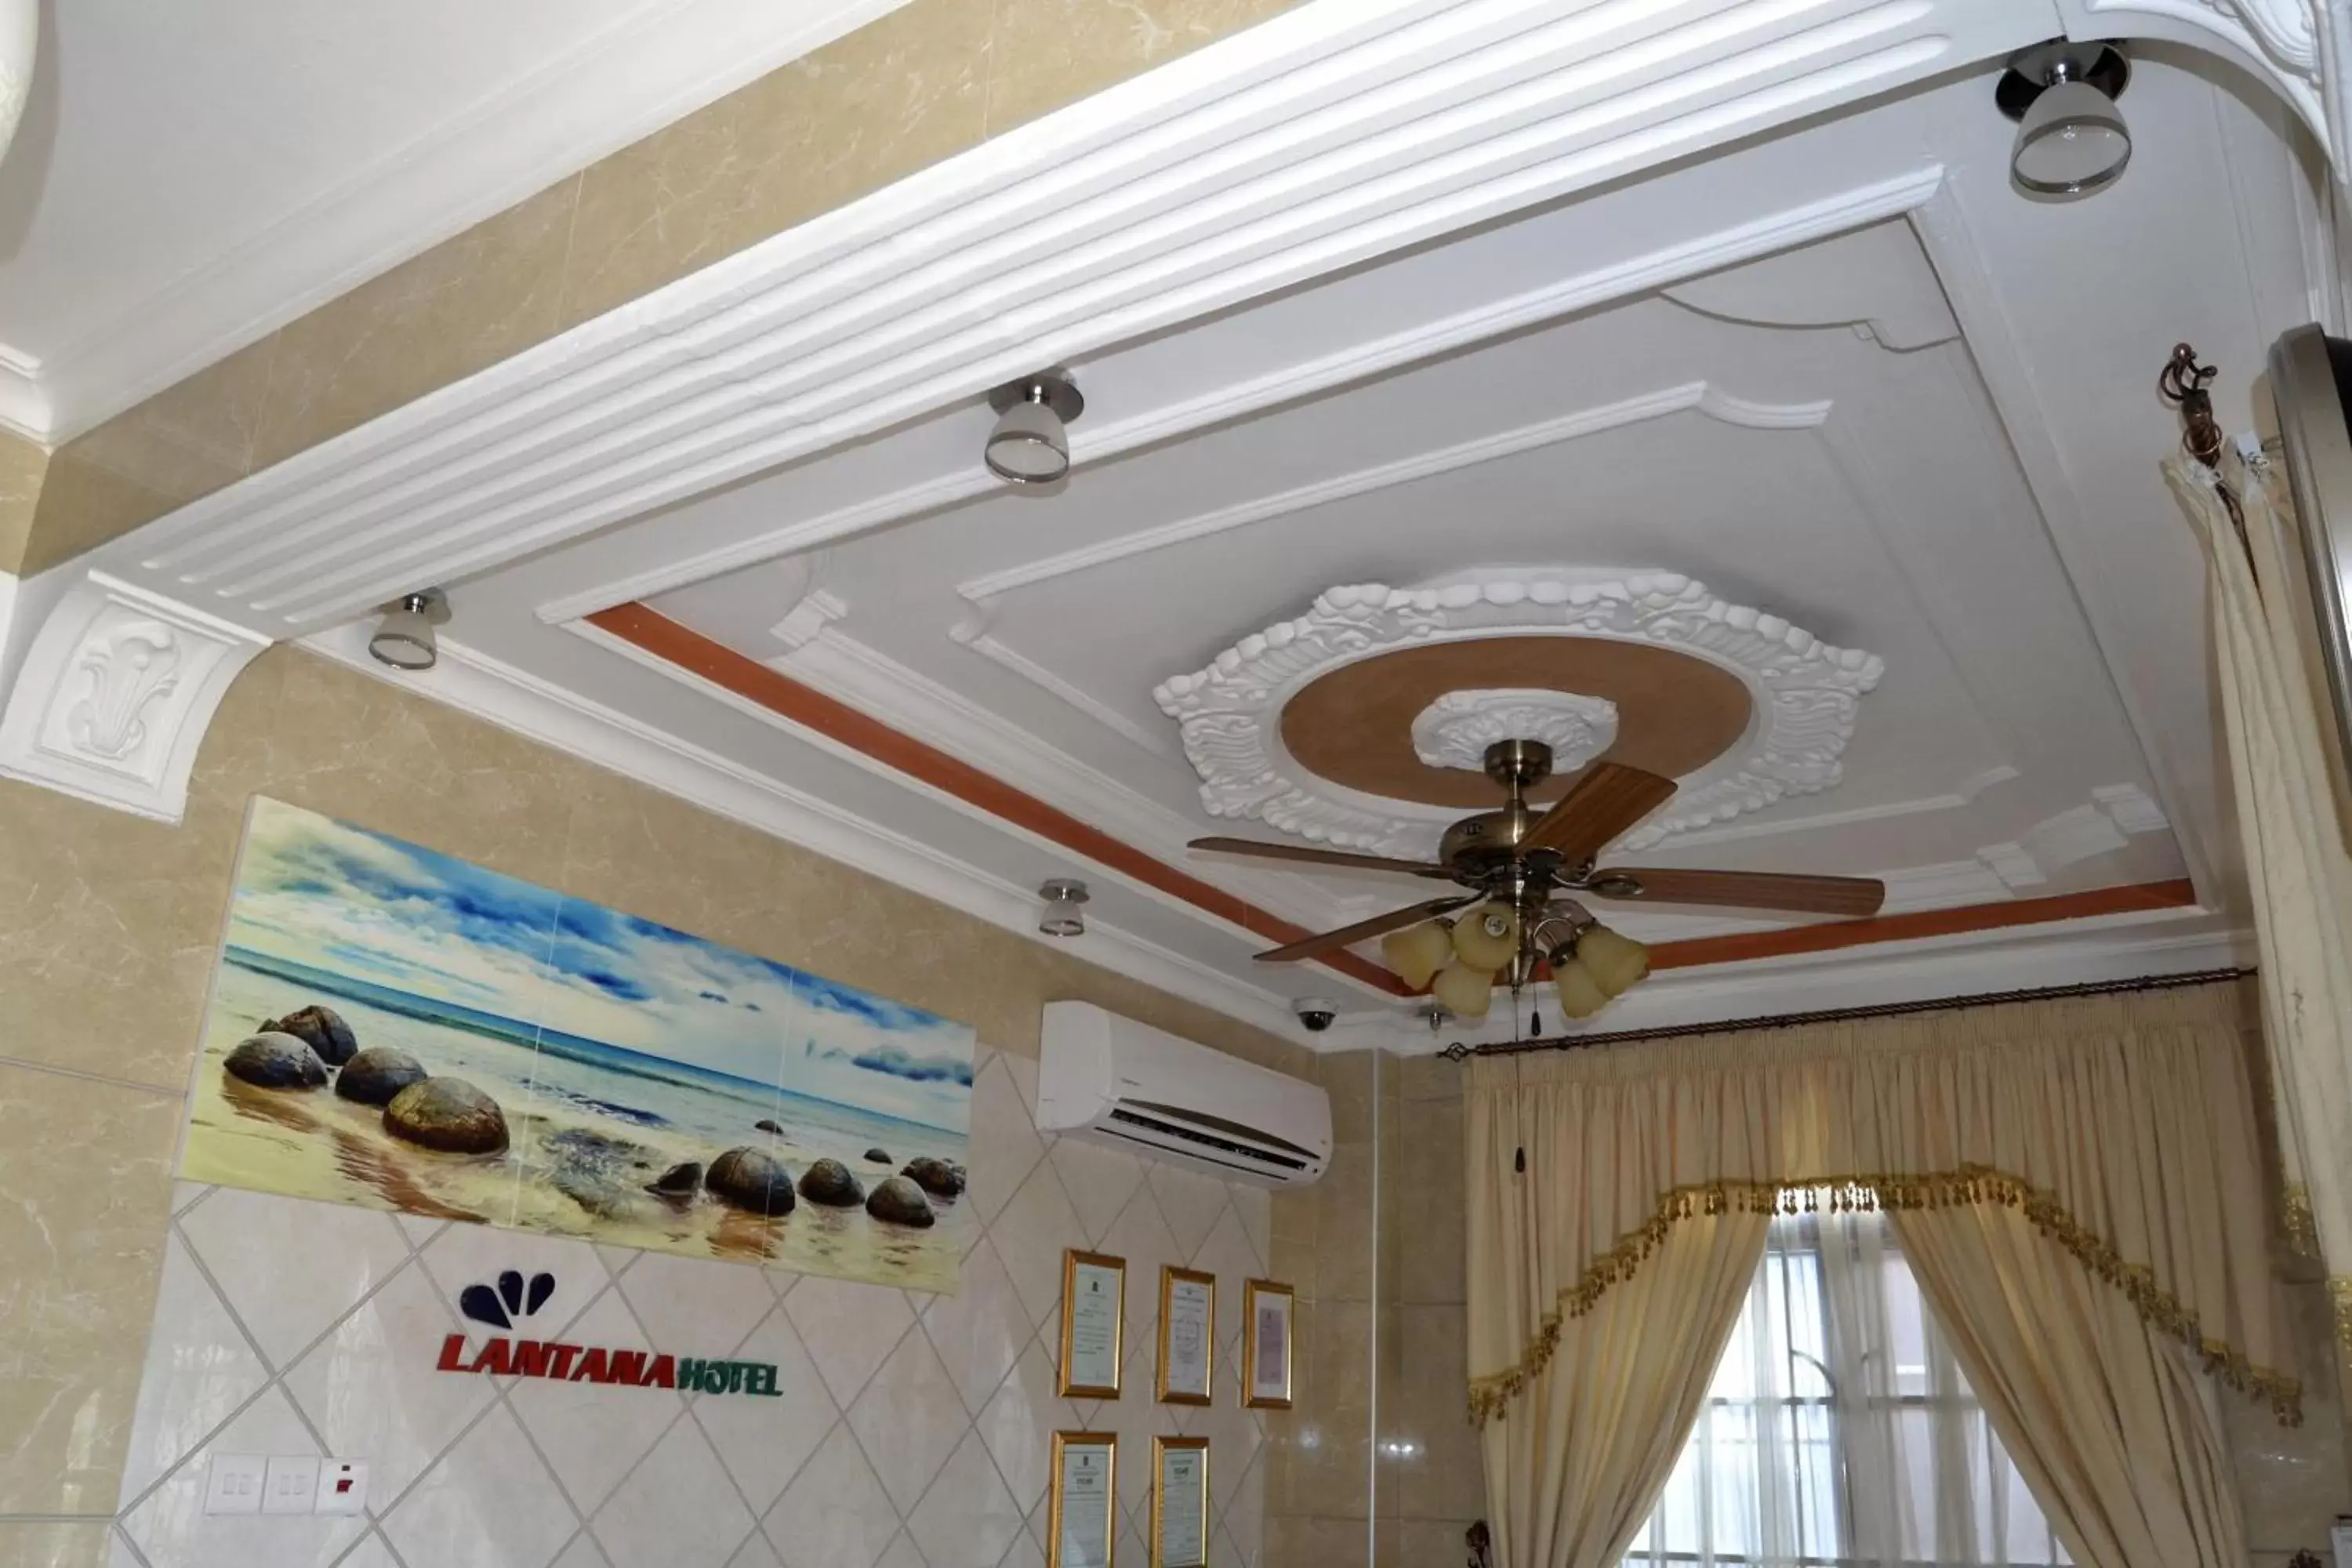 Lobby or reception in Lantana Hotel